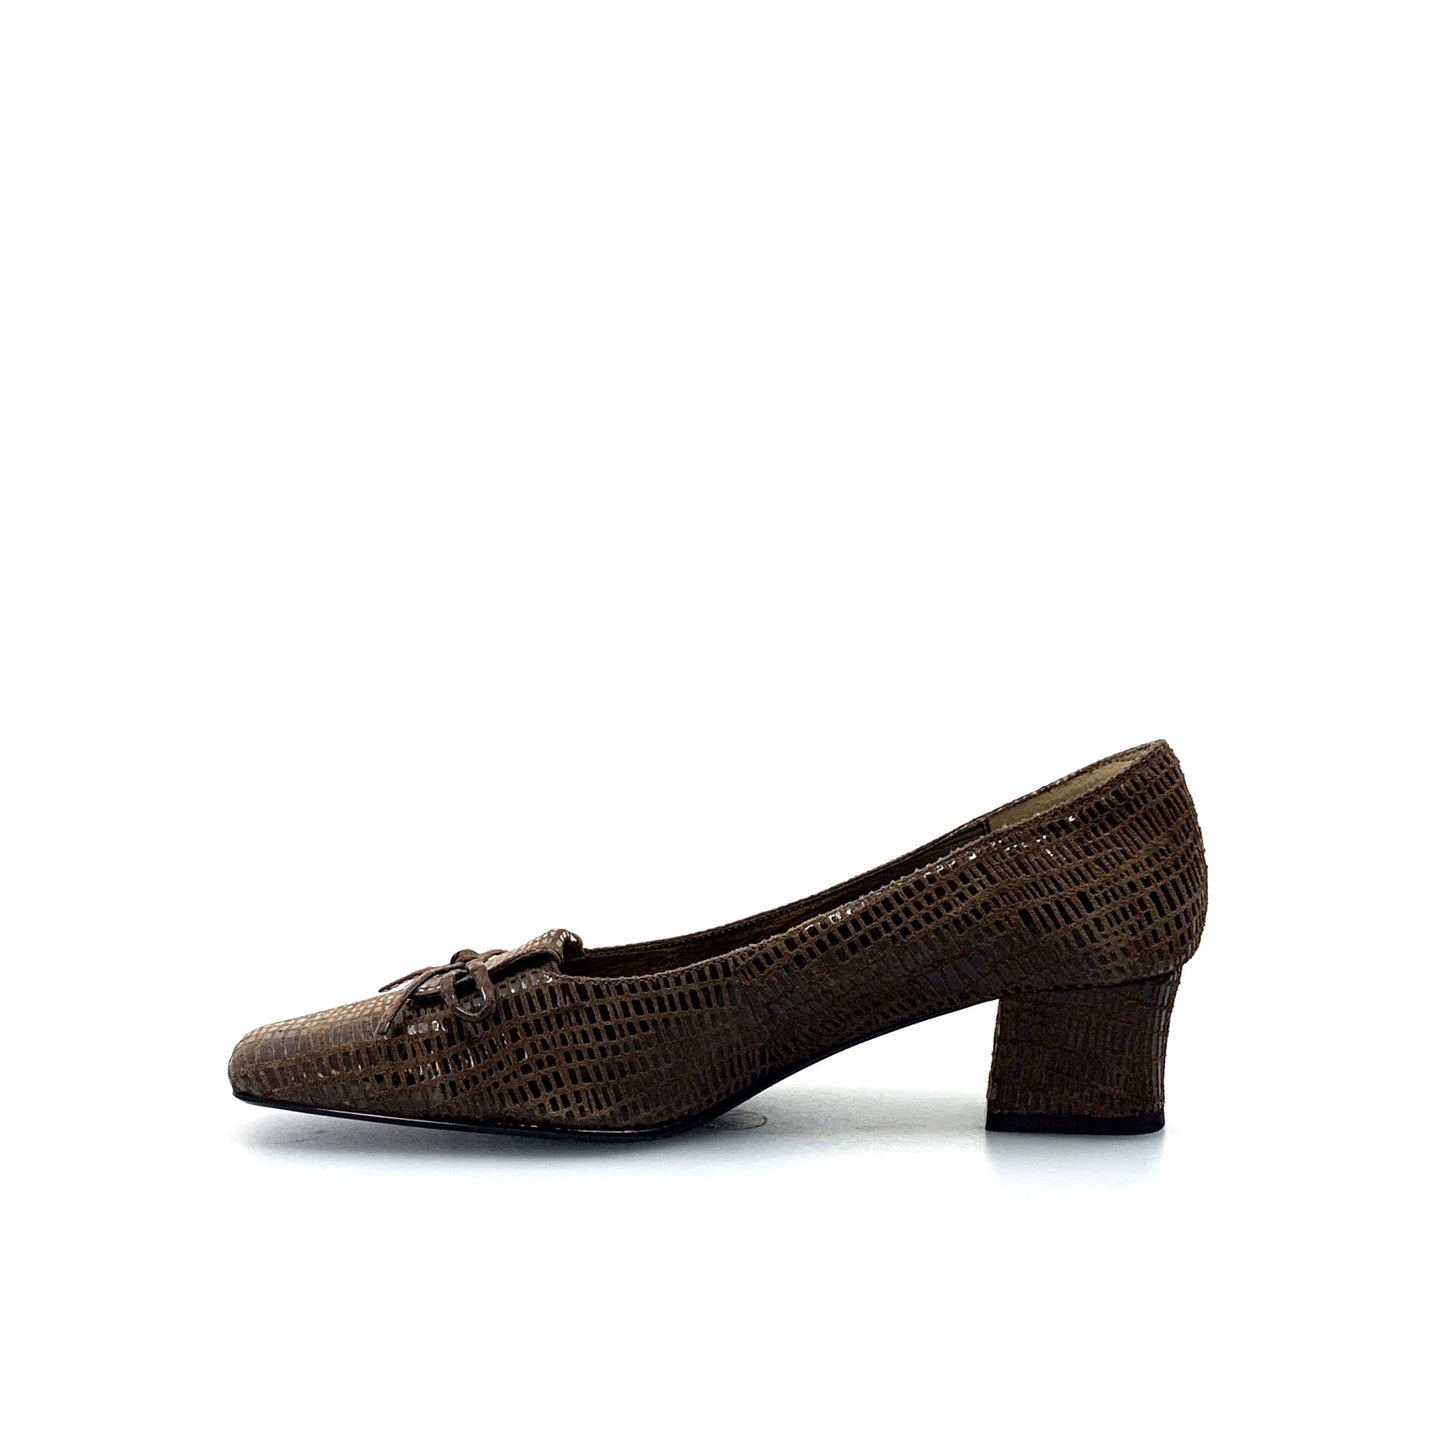 J. Renee Womens Naughty Dress Shoes Heels Dark Brown Tree Bark Print NIB